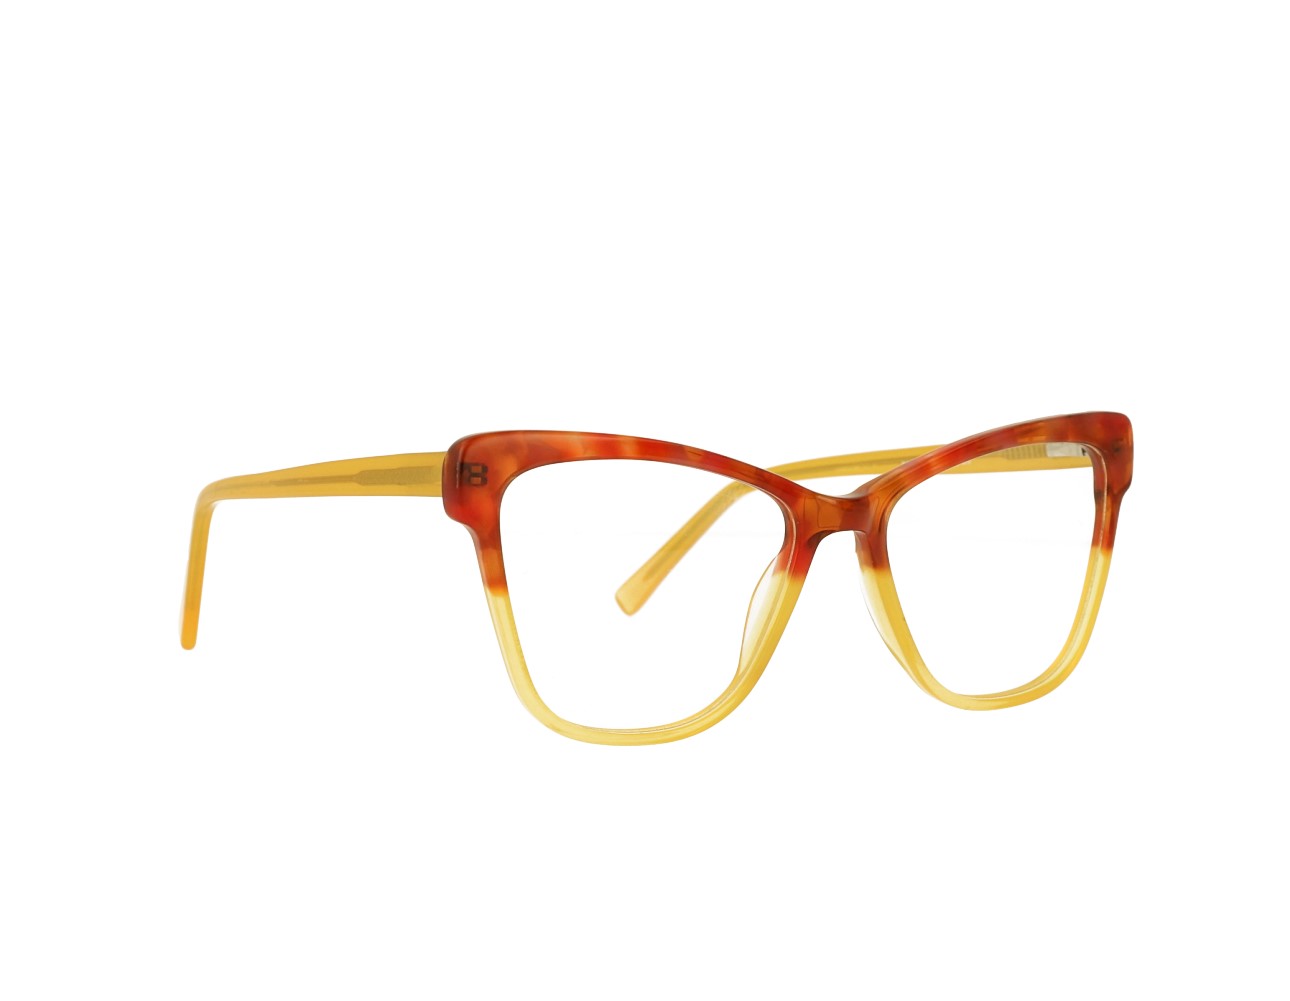 54 Size Design Woman's Cat Eye Optical frame Acetate Eyeglasses Spring Hinge Eyewear